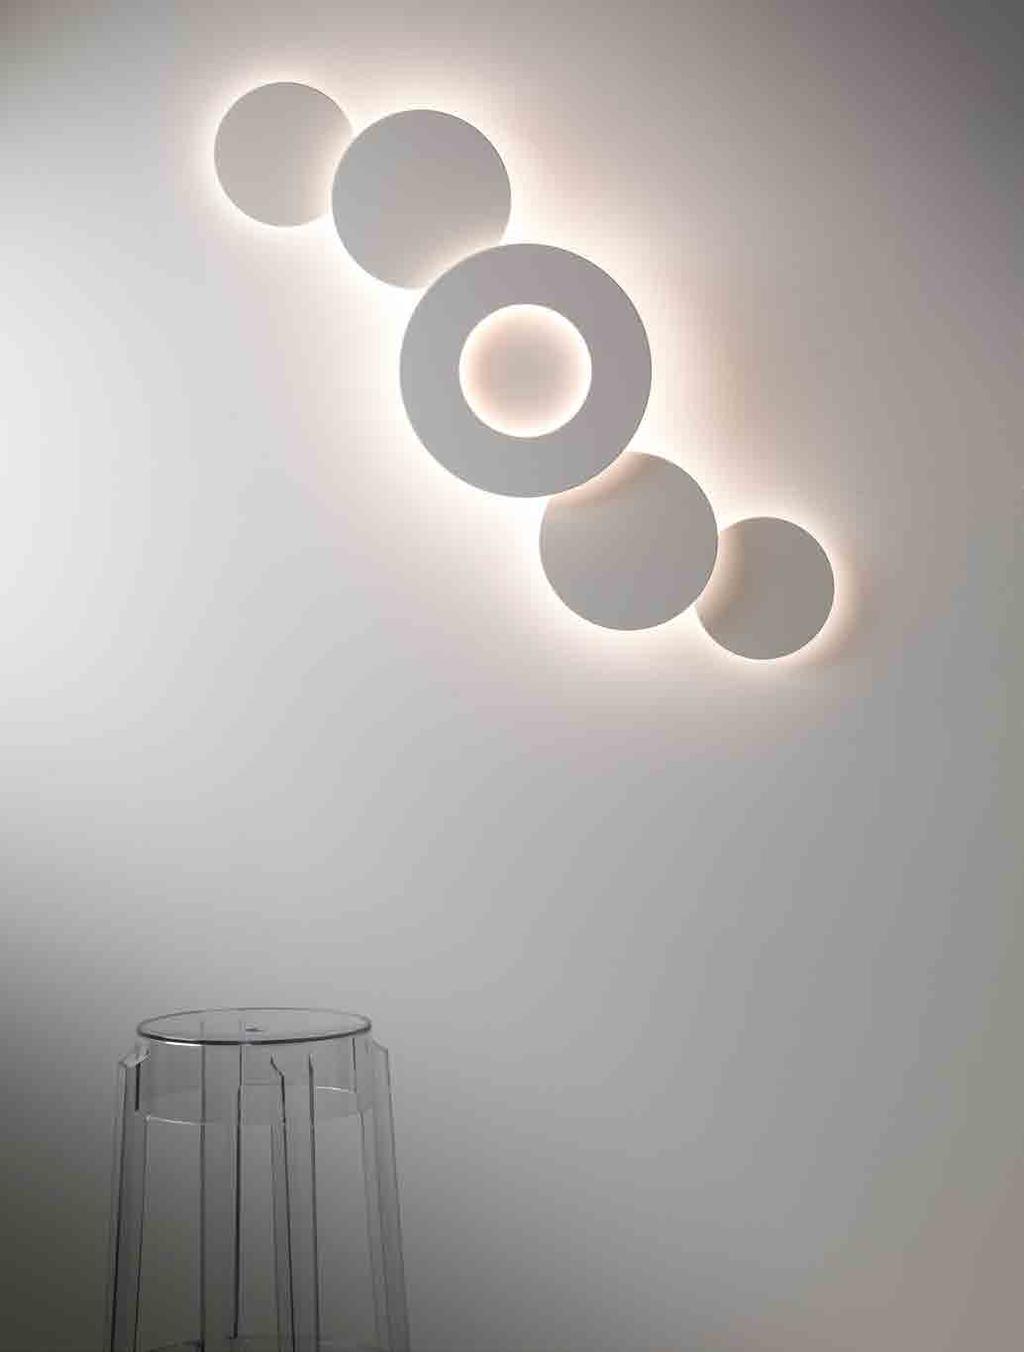 KOKO Lampada a LED da parete a diffusione. Corpo in alluminio verniciato con possibilità di diversi colori per anello ed elemento centrale secondo palette RAL.